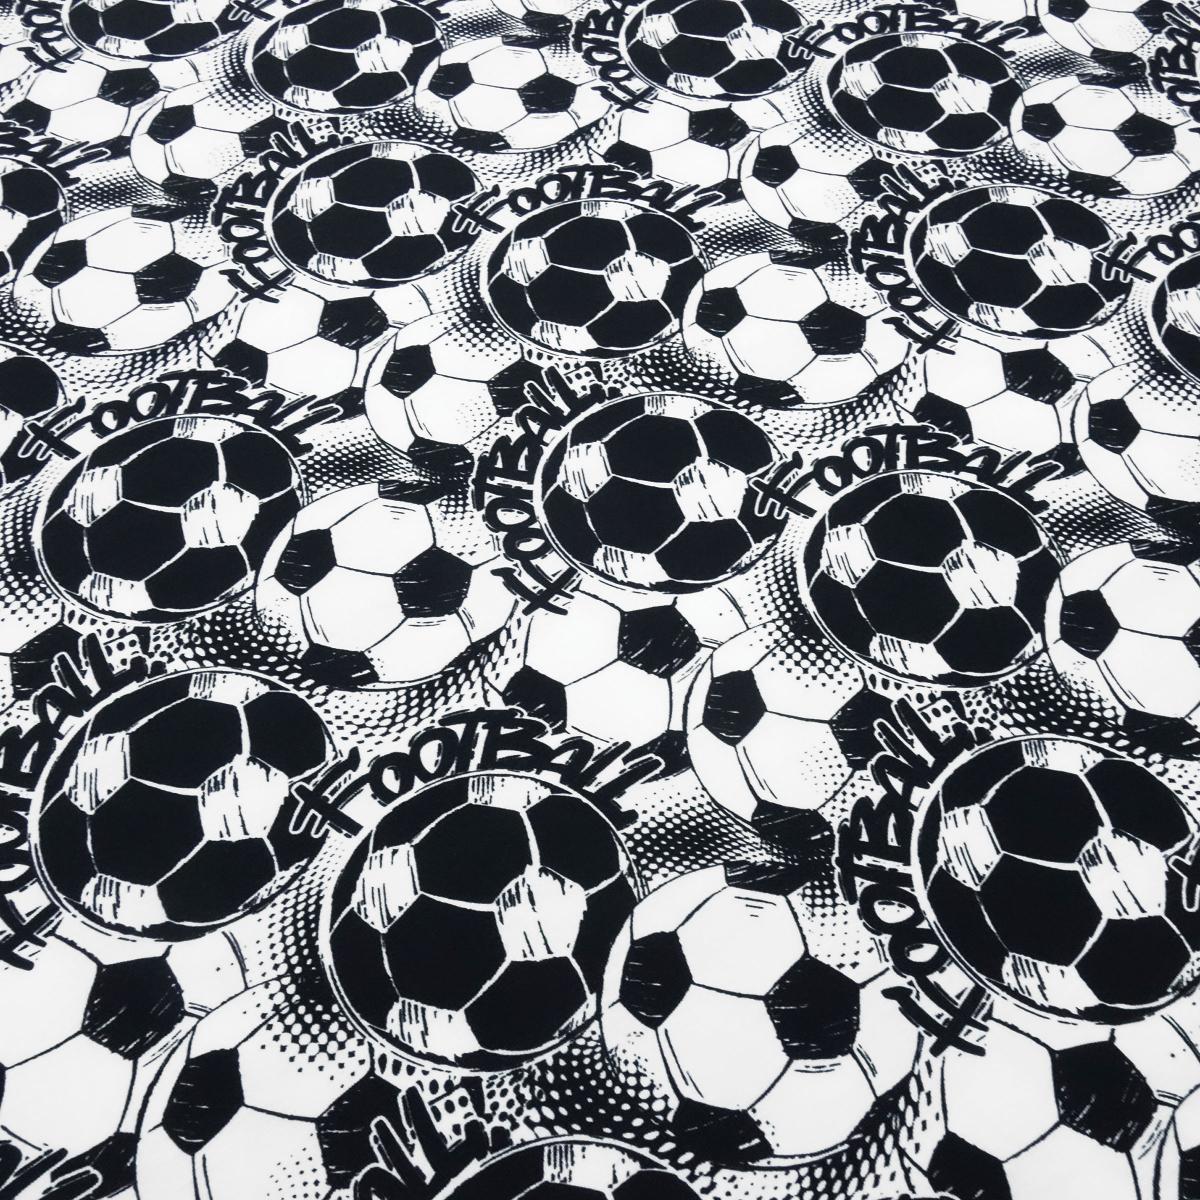 Stoff Baumwolle Jersey Team Fußball Football Soccer Design weiß schwarz Kinderstoff Kleiderstoff